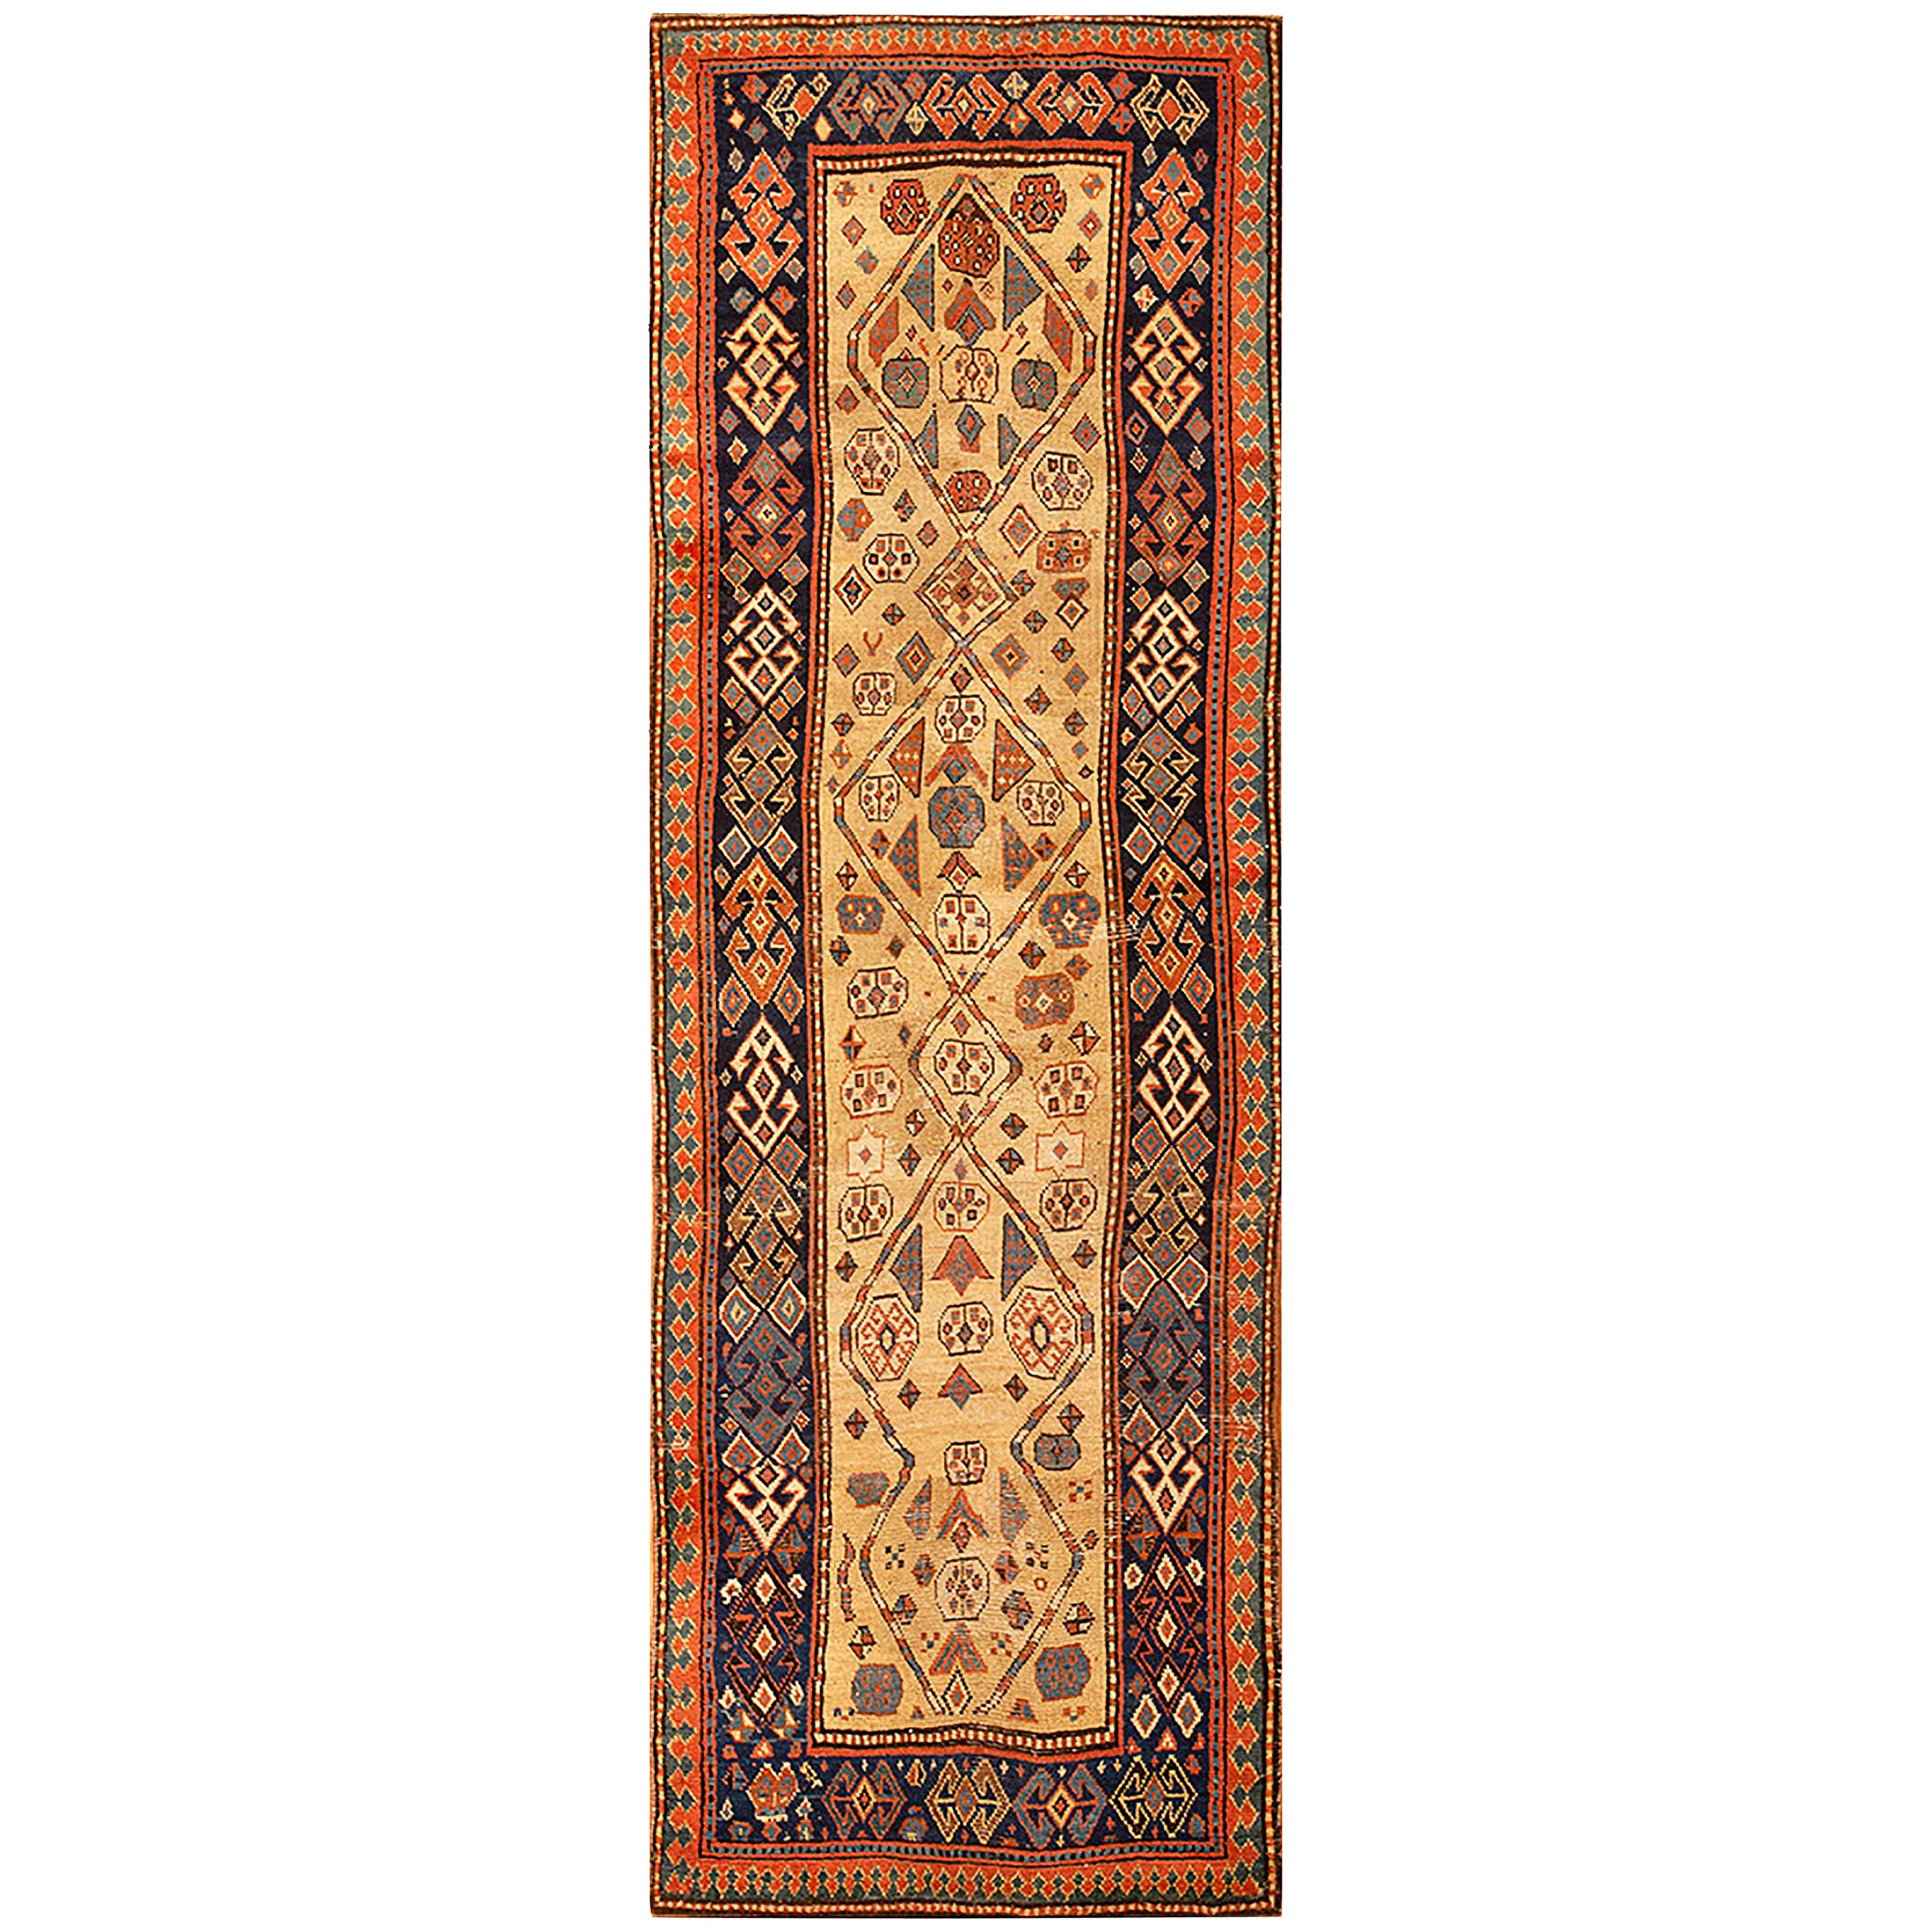 19th Century Caucasian Kazak Carpet ( 3'7" x 9'9" - 110 x 297 )